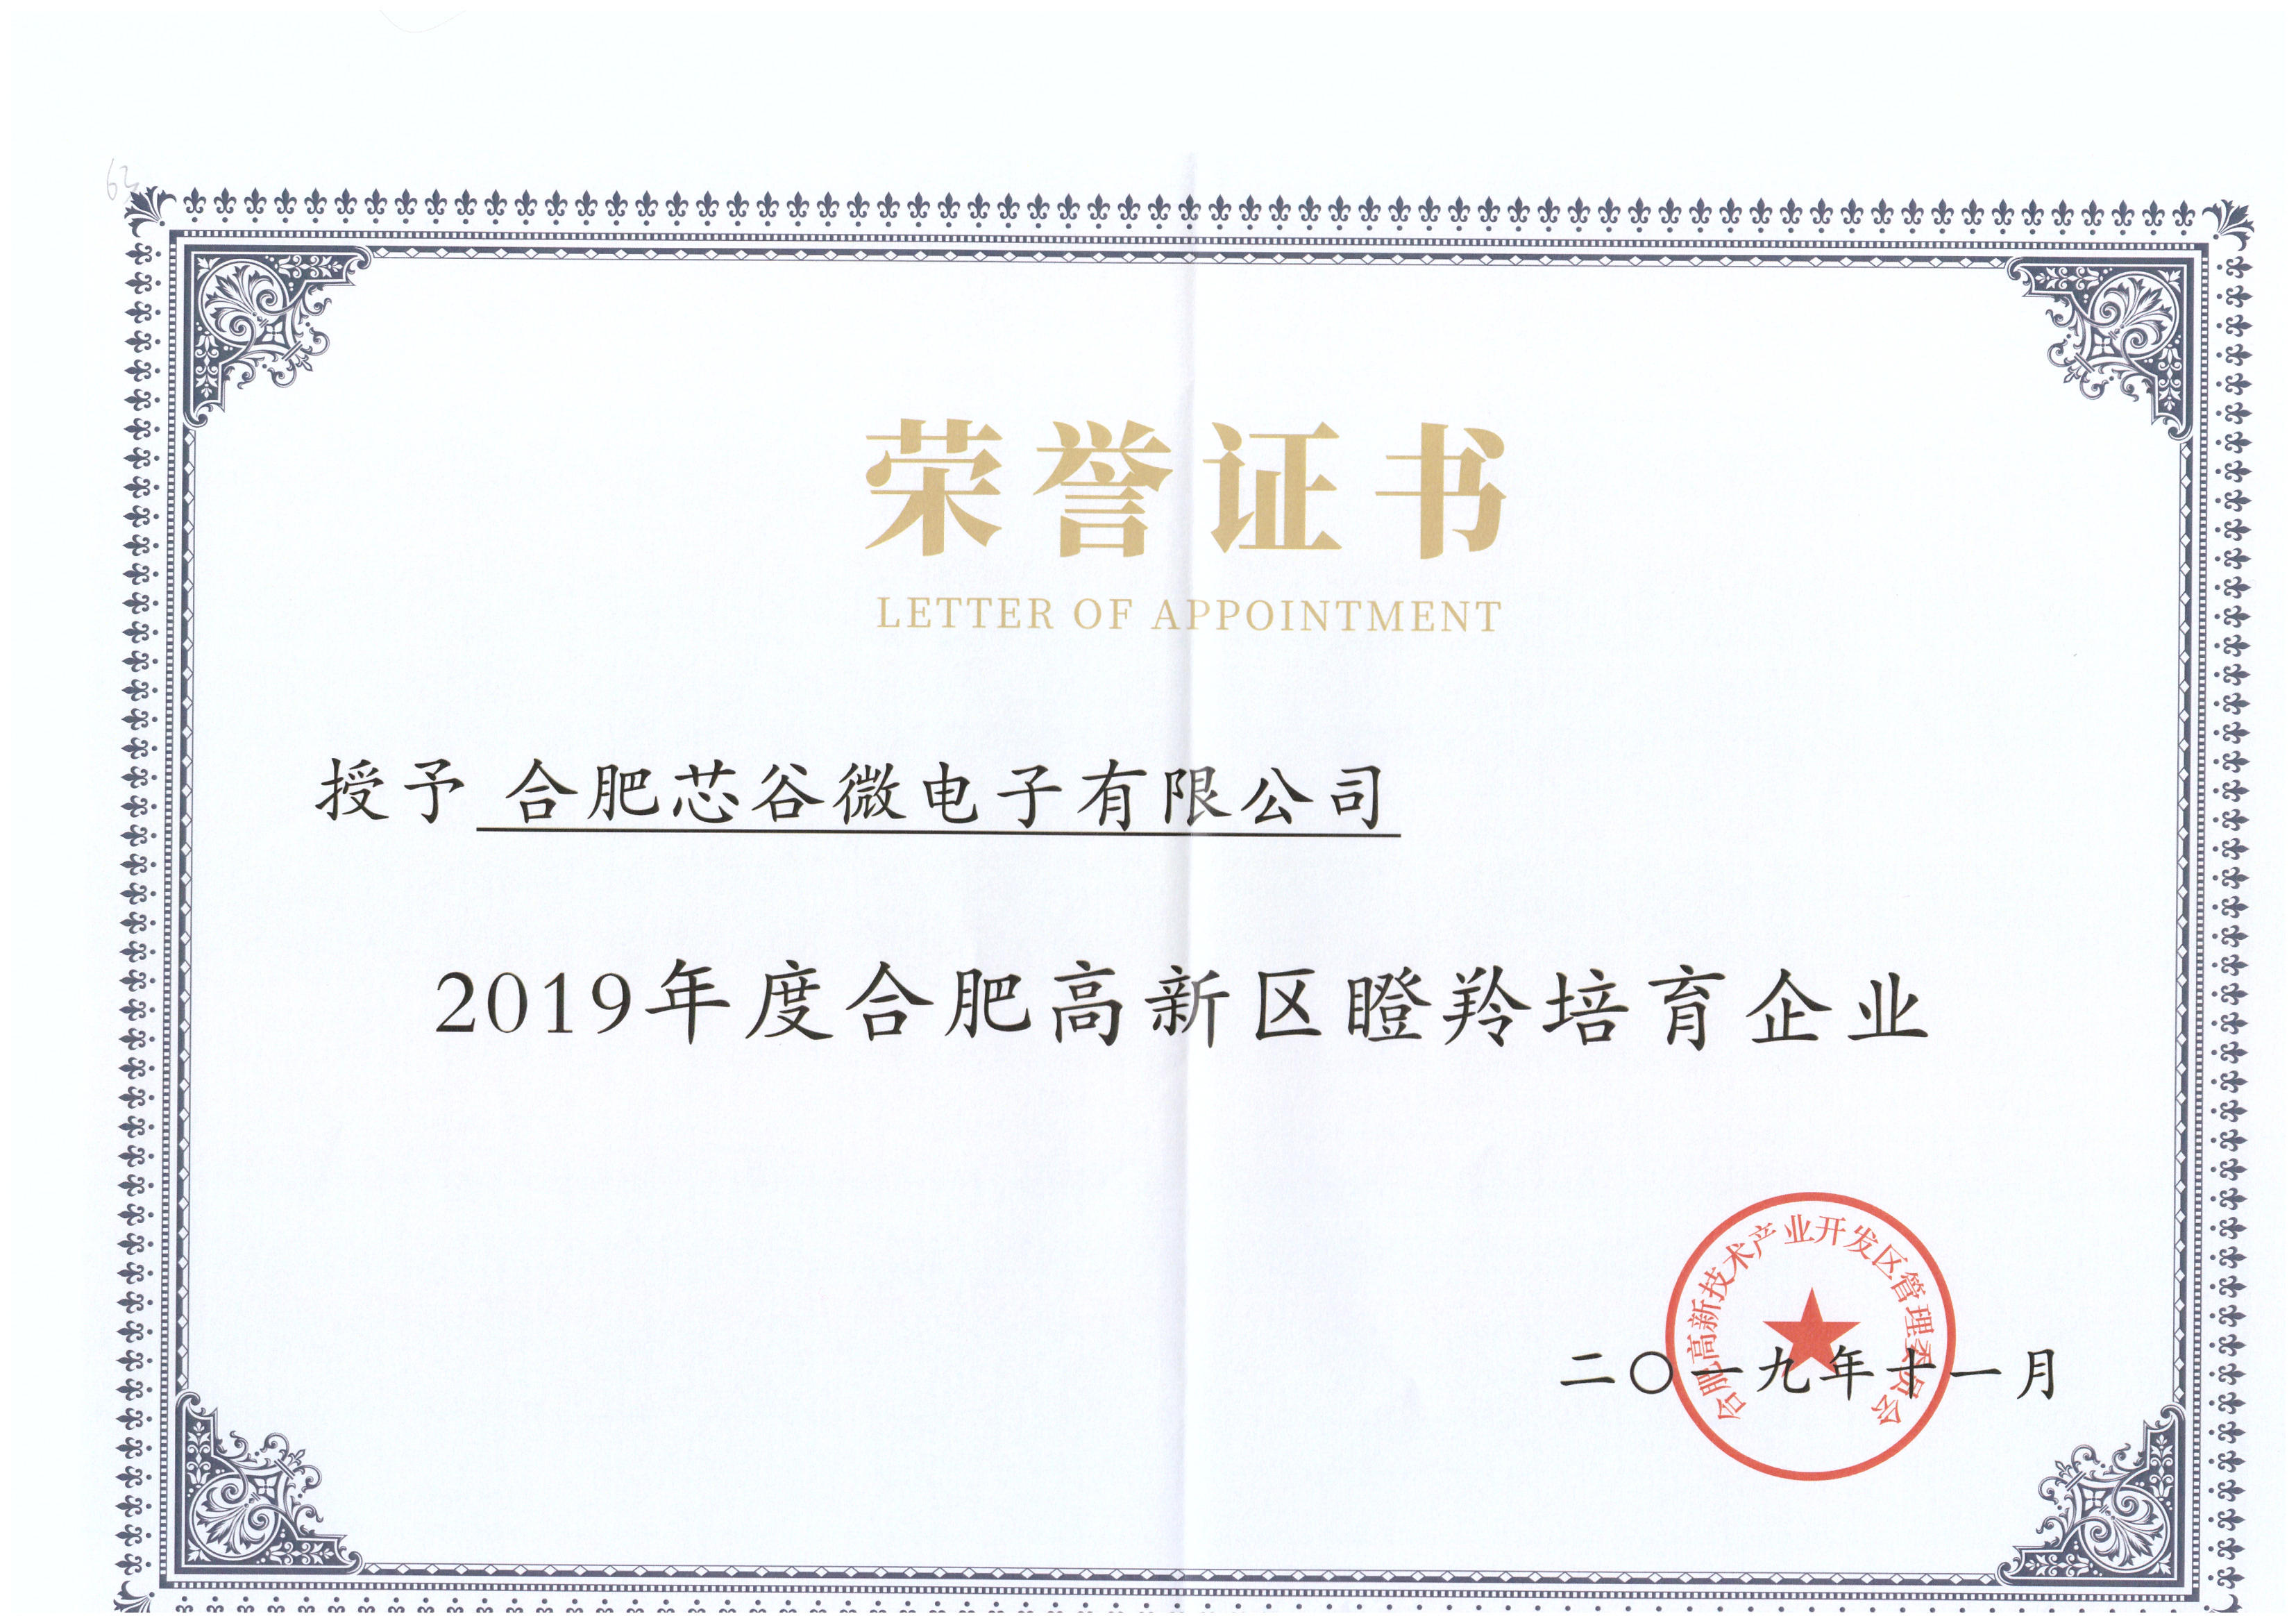 2019年度合肥高新区瞪羚培育企业荣誉证书